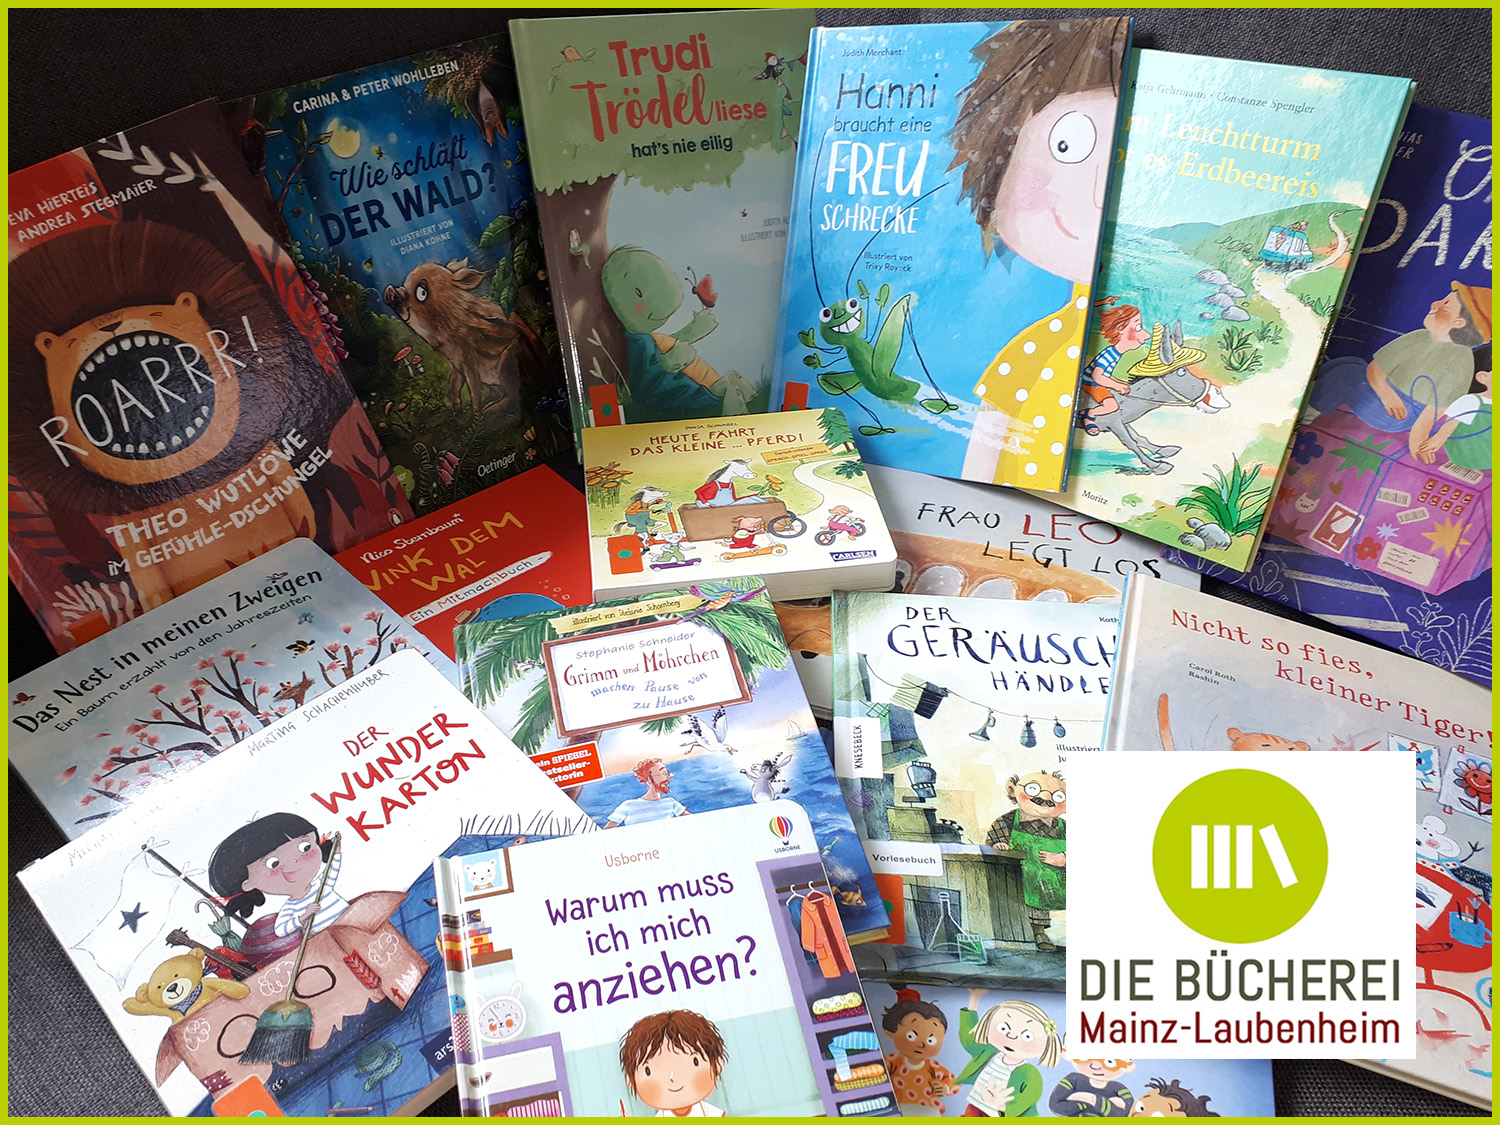 Wir danken allen Buchpaten für ihre Spende! (c) Die Bücherei Mainz-Laubenheim